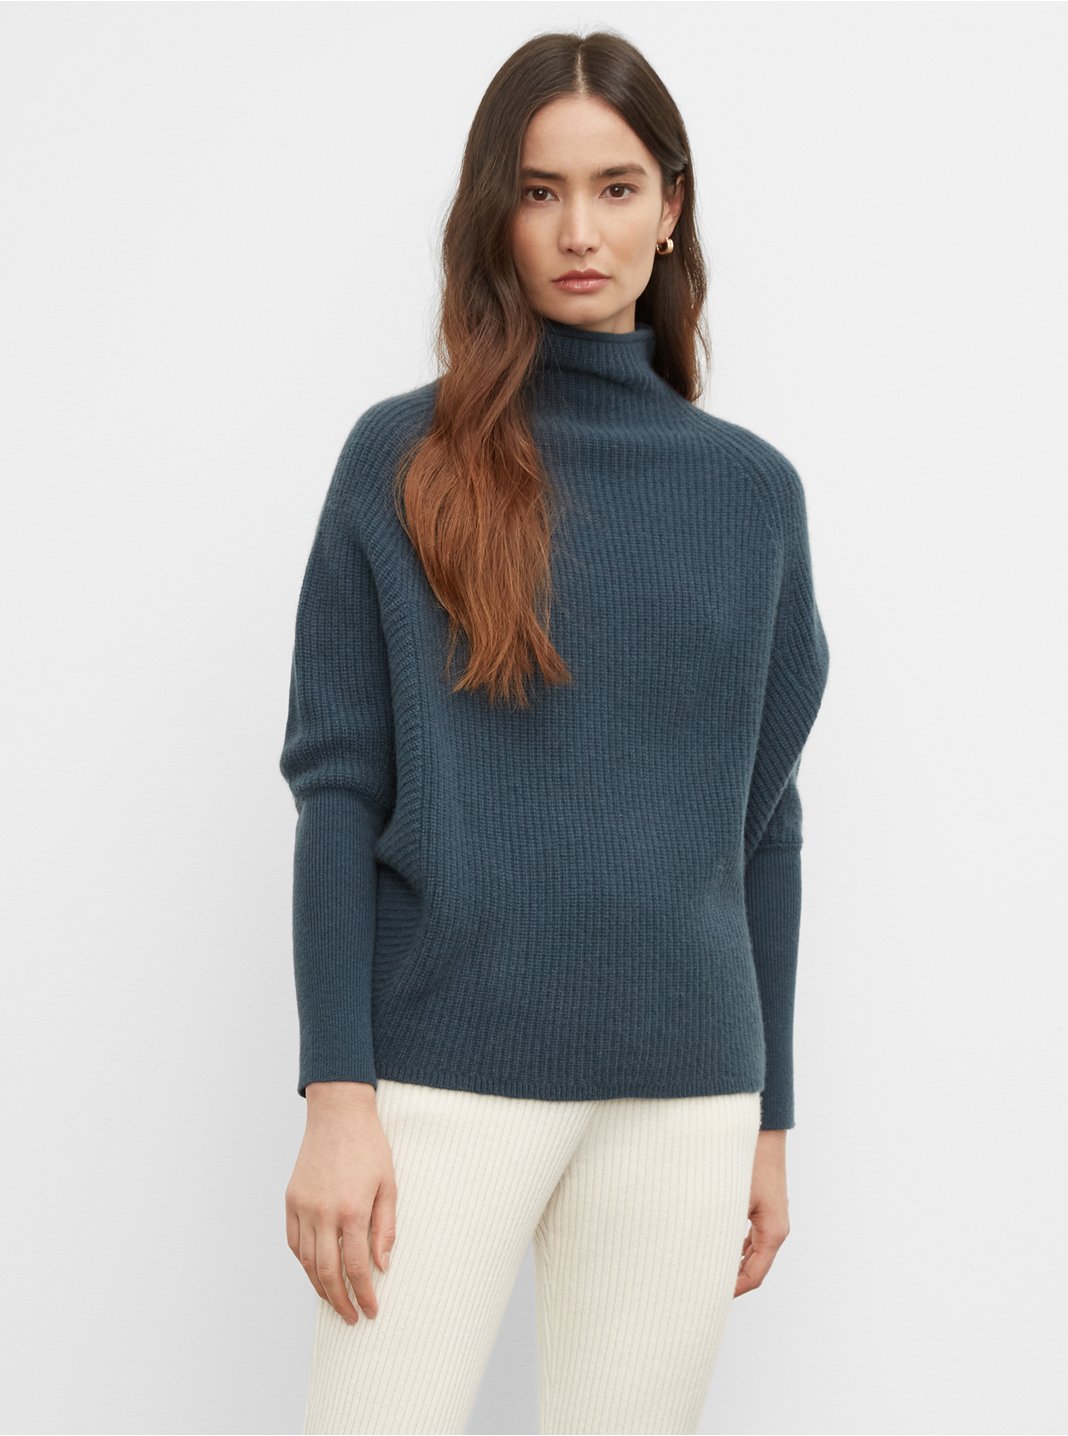 Clubmonaco Emma Cashmere Sweater